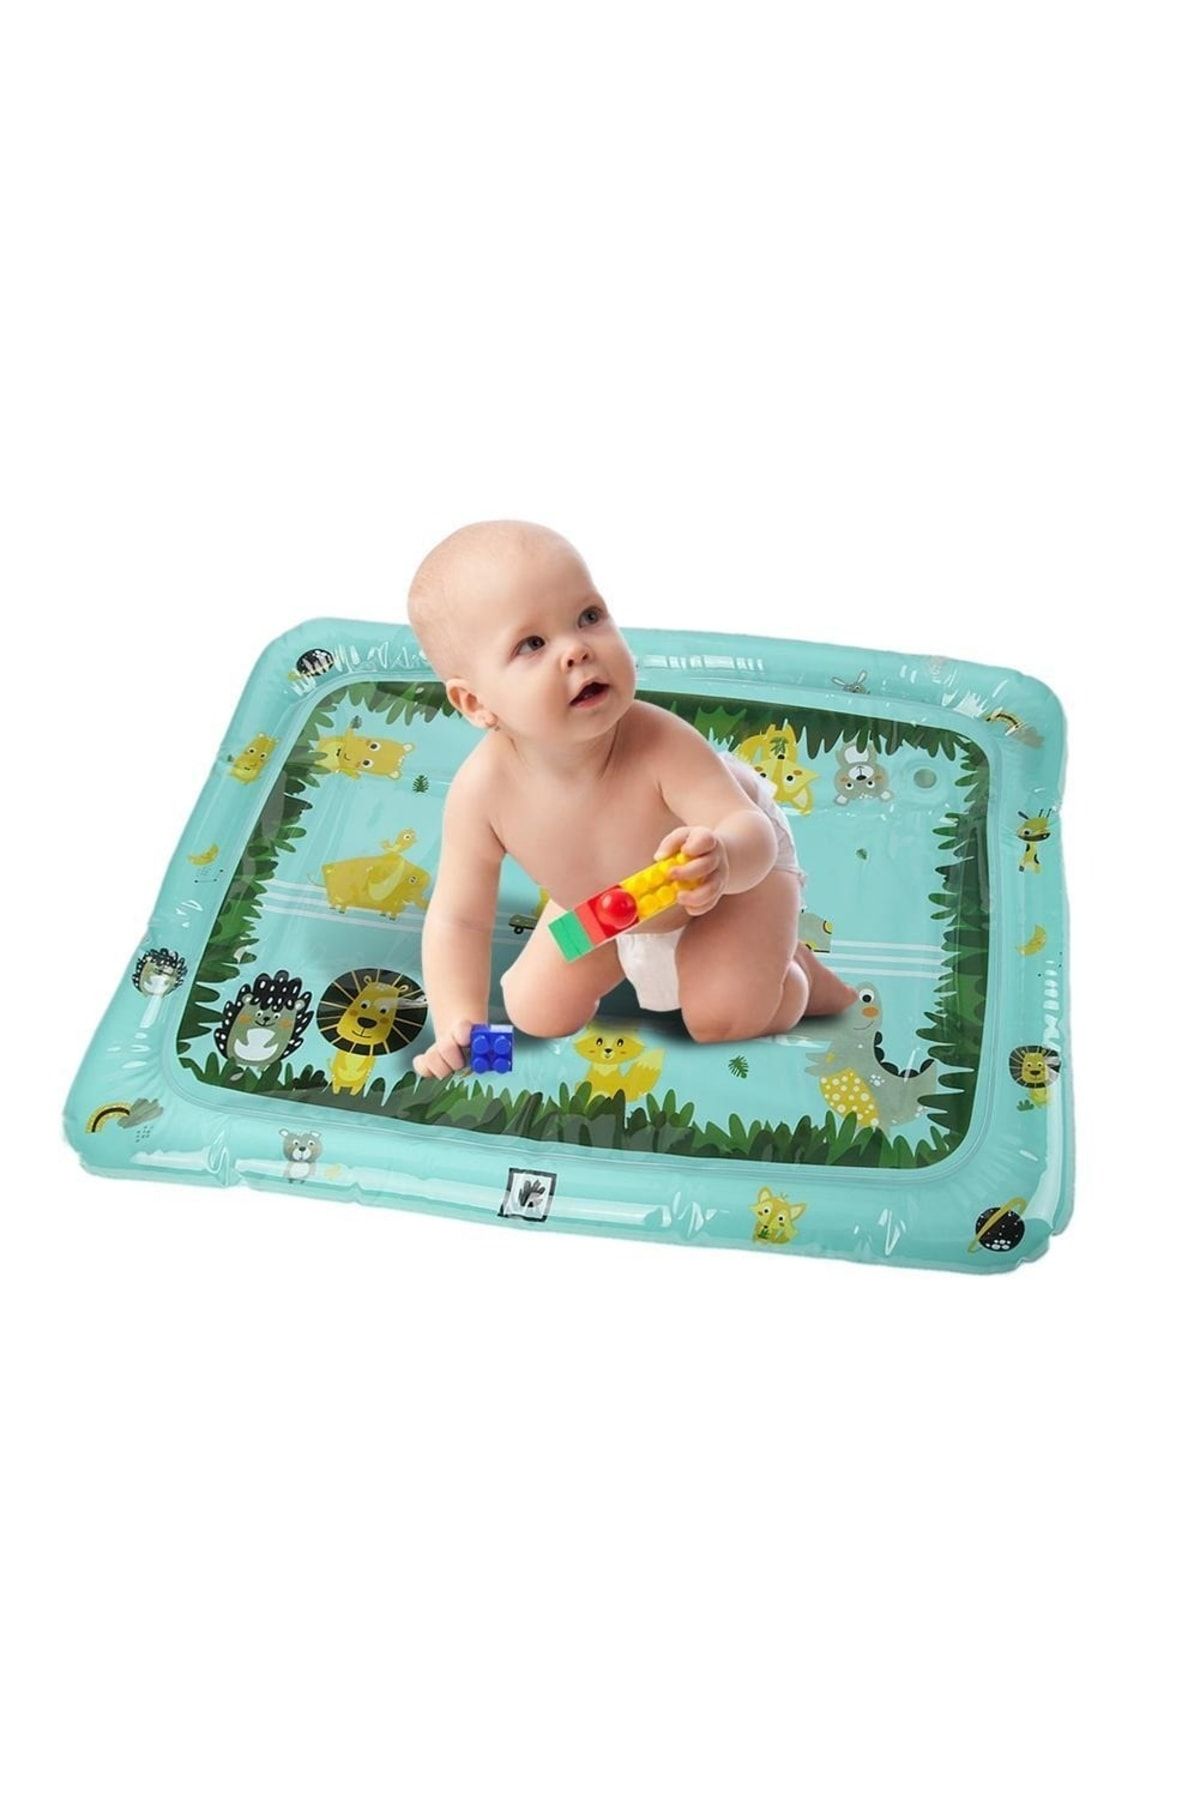 Schulzz Bebek Yer Su Matı Ve Eğlenceli Yeşil Oyun Matı 80*60